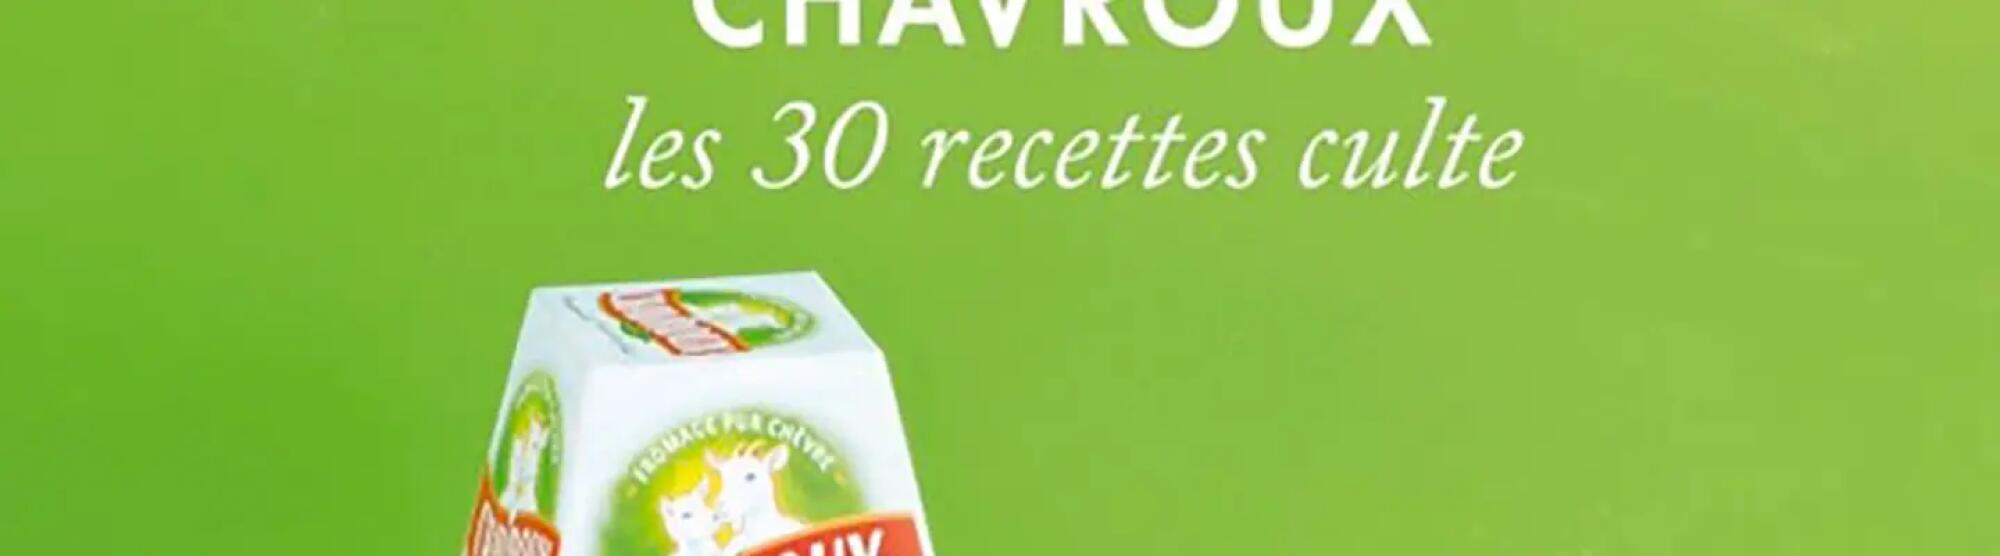 LA02_chavroux-les-30-recettes-culte